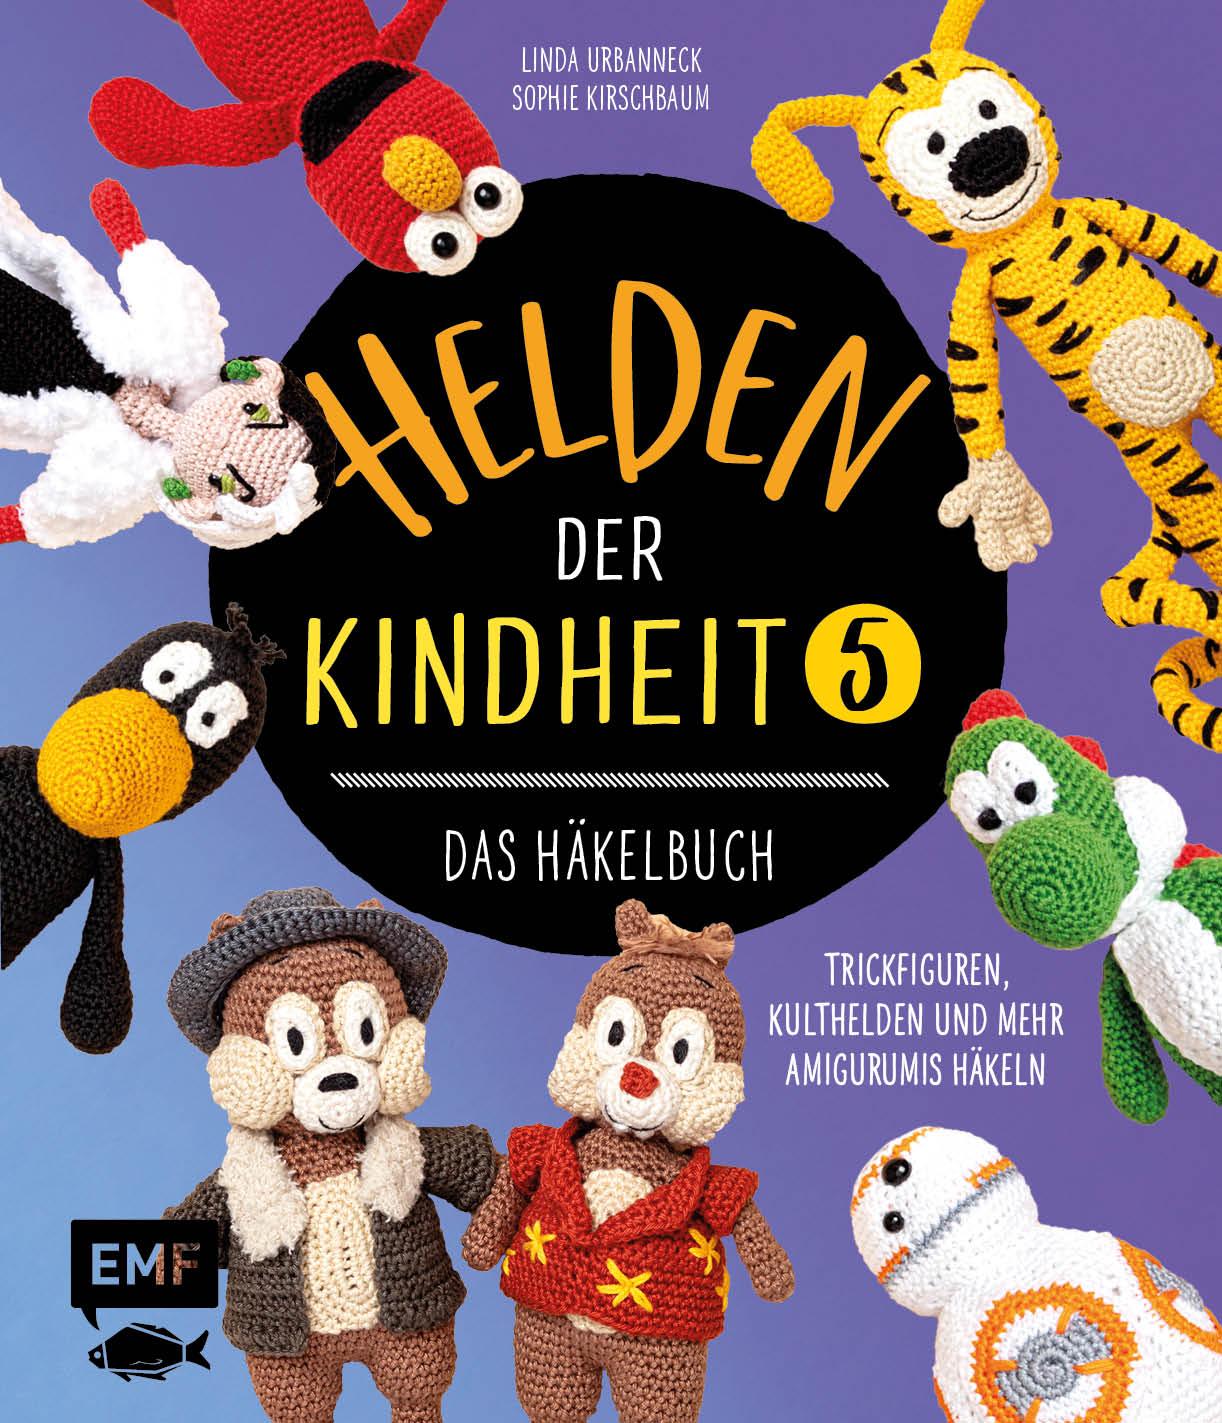 Carte Helden der Kindheit - Das Häkelbuch - Band 5 Sophie Kirschbaum